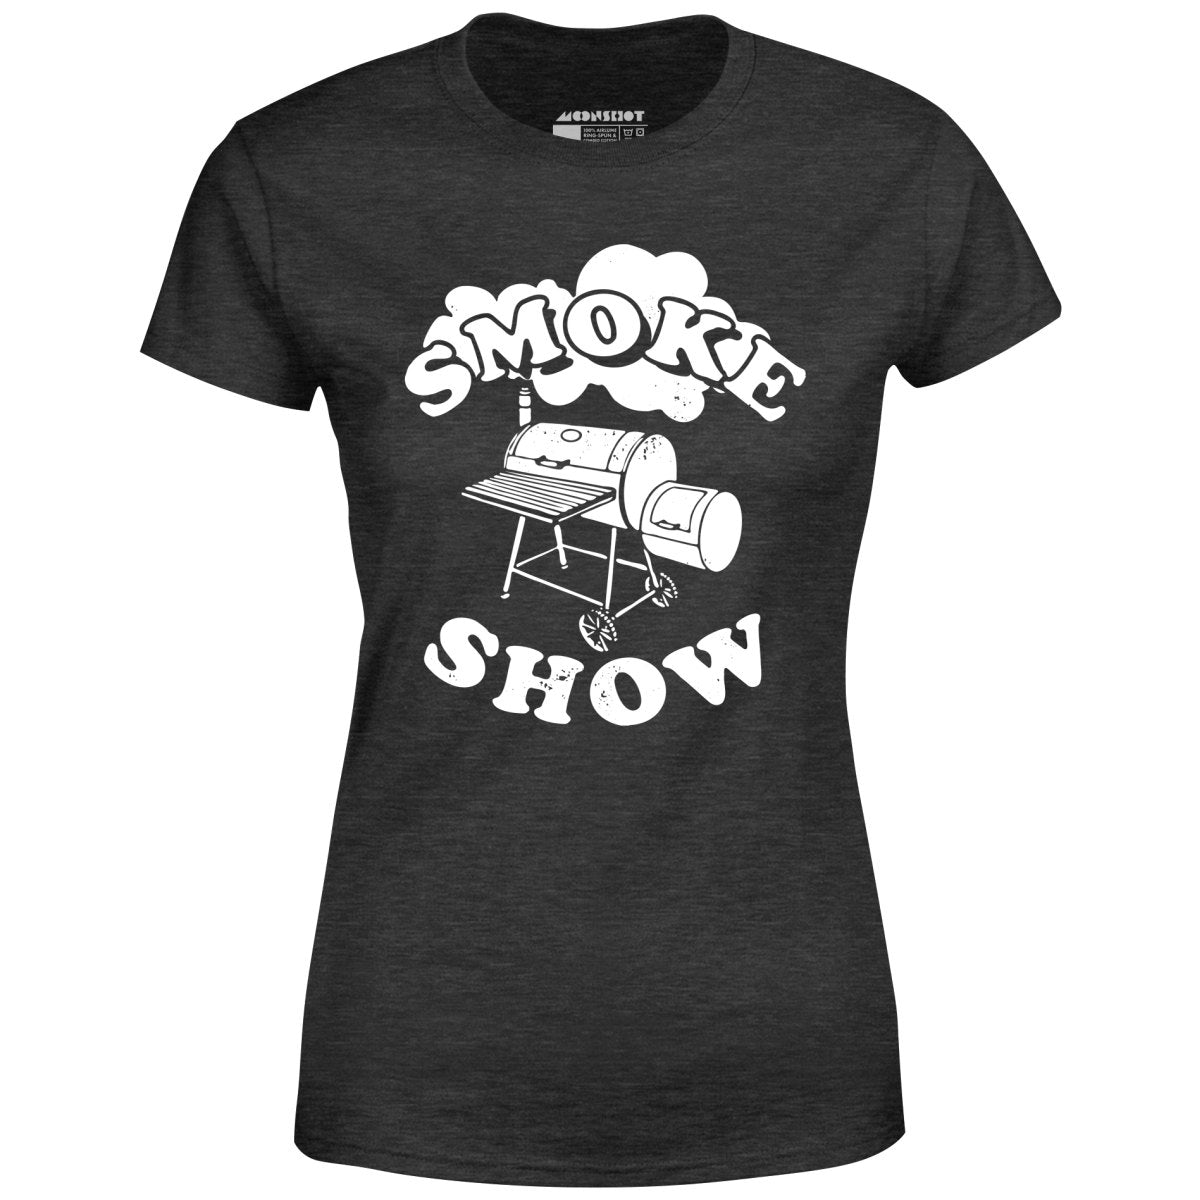 Smoke Show - Women's T-Shirt